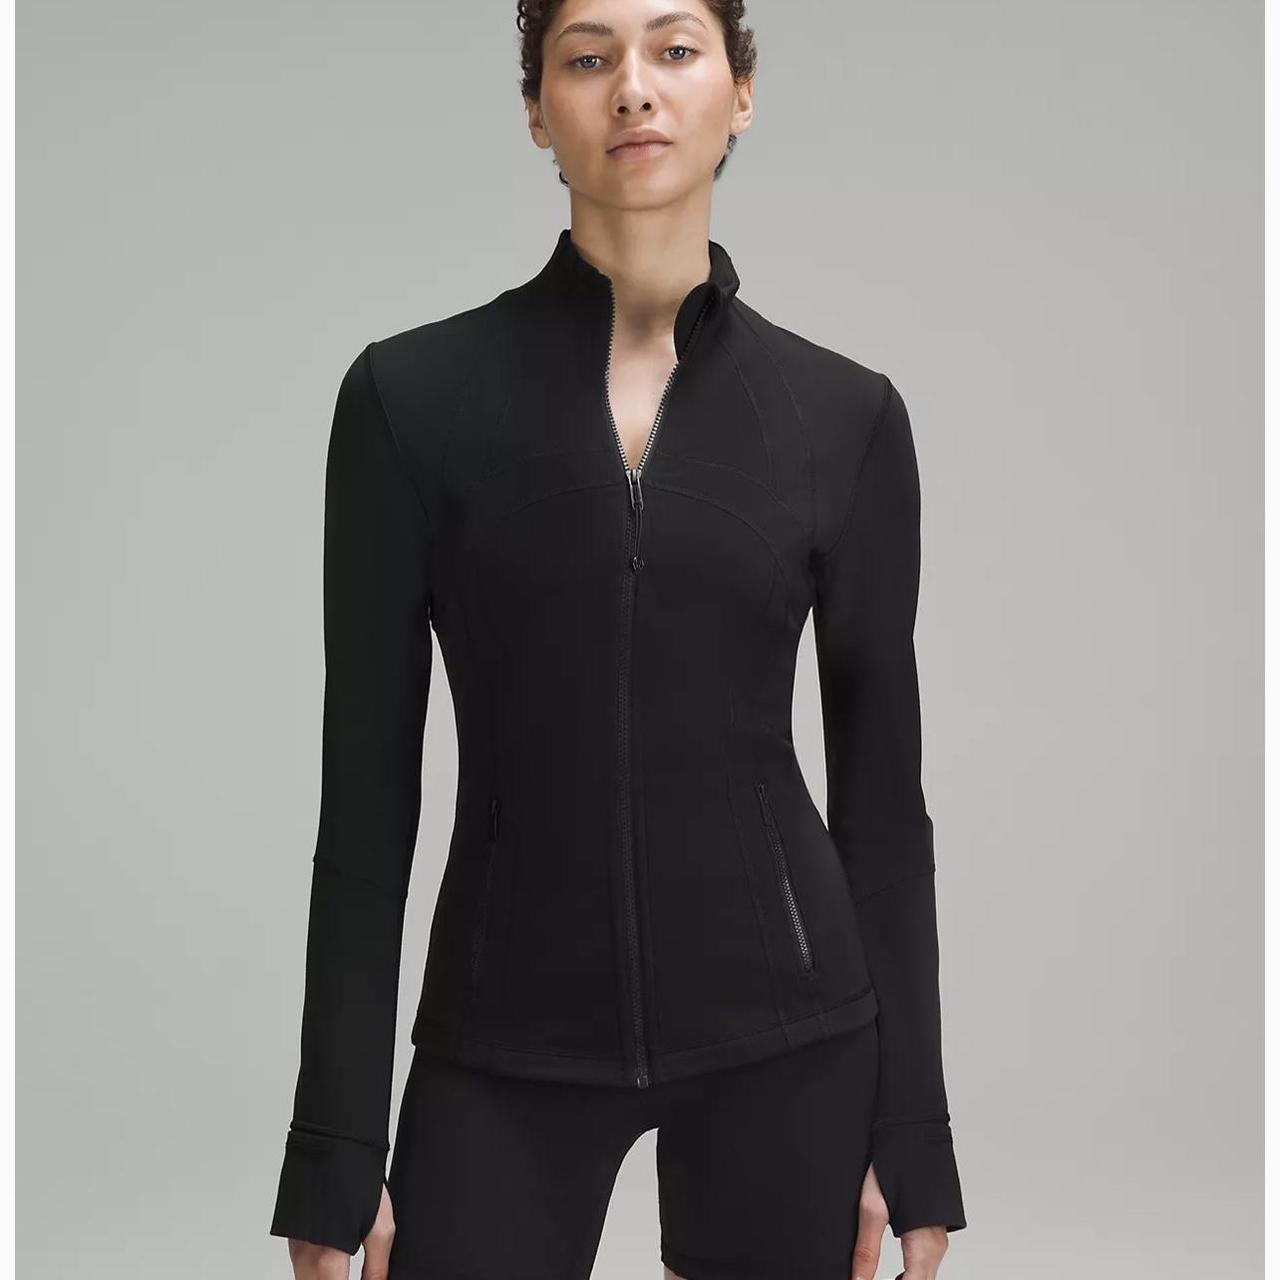 Black lululemon define Jacket Women's size 8 Worn - Depop